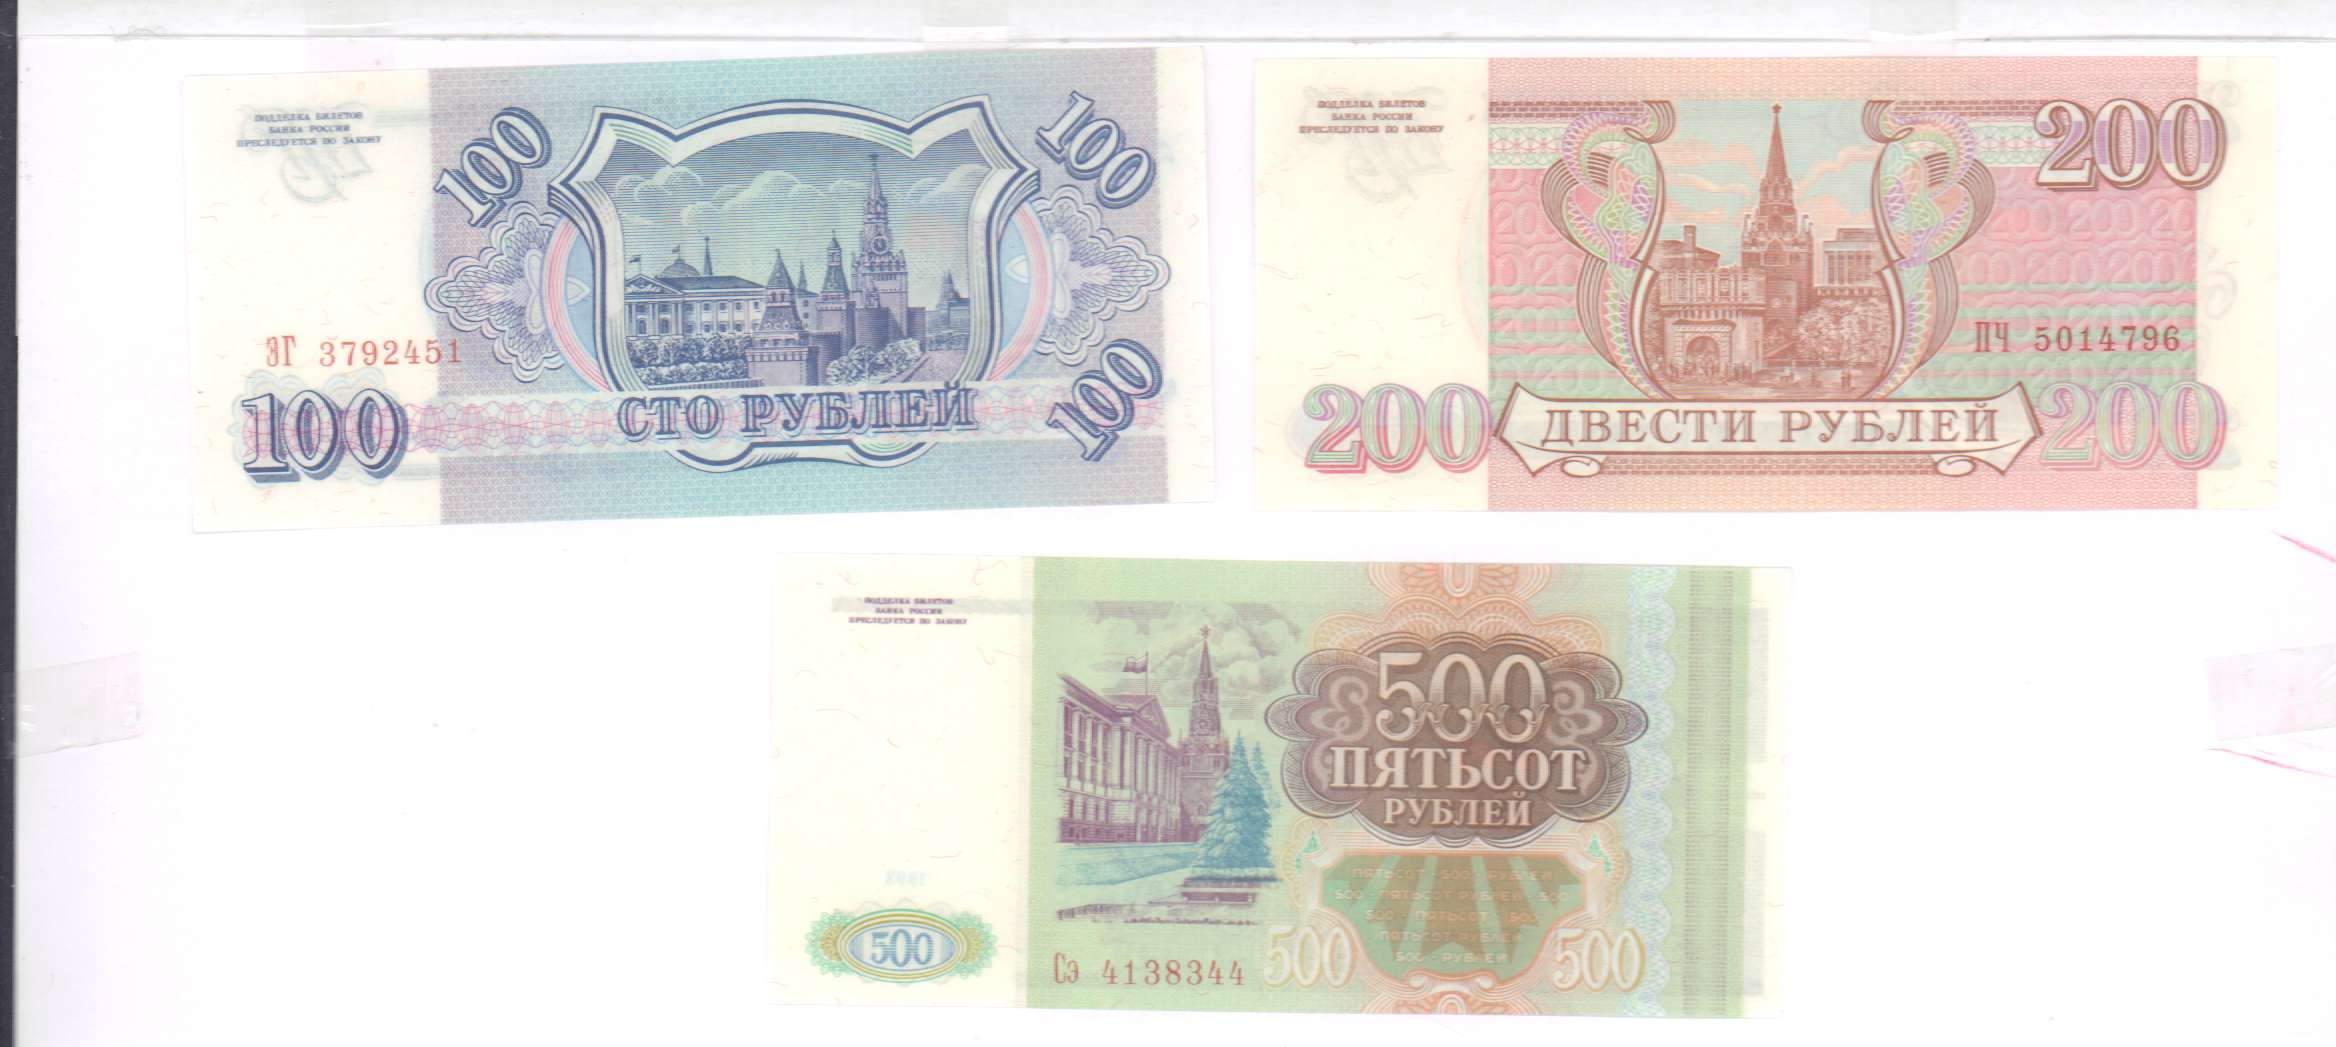 4 80 в рублях. 100 Рублей 1993 Аверс-Аверс. 100 Рублей 3 штуки. 500 Рублей 3 штуки. Как выглядят билеты банка России с кюаркодом.